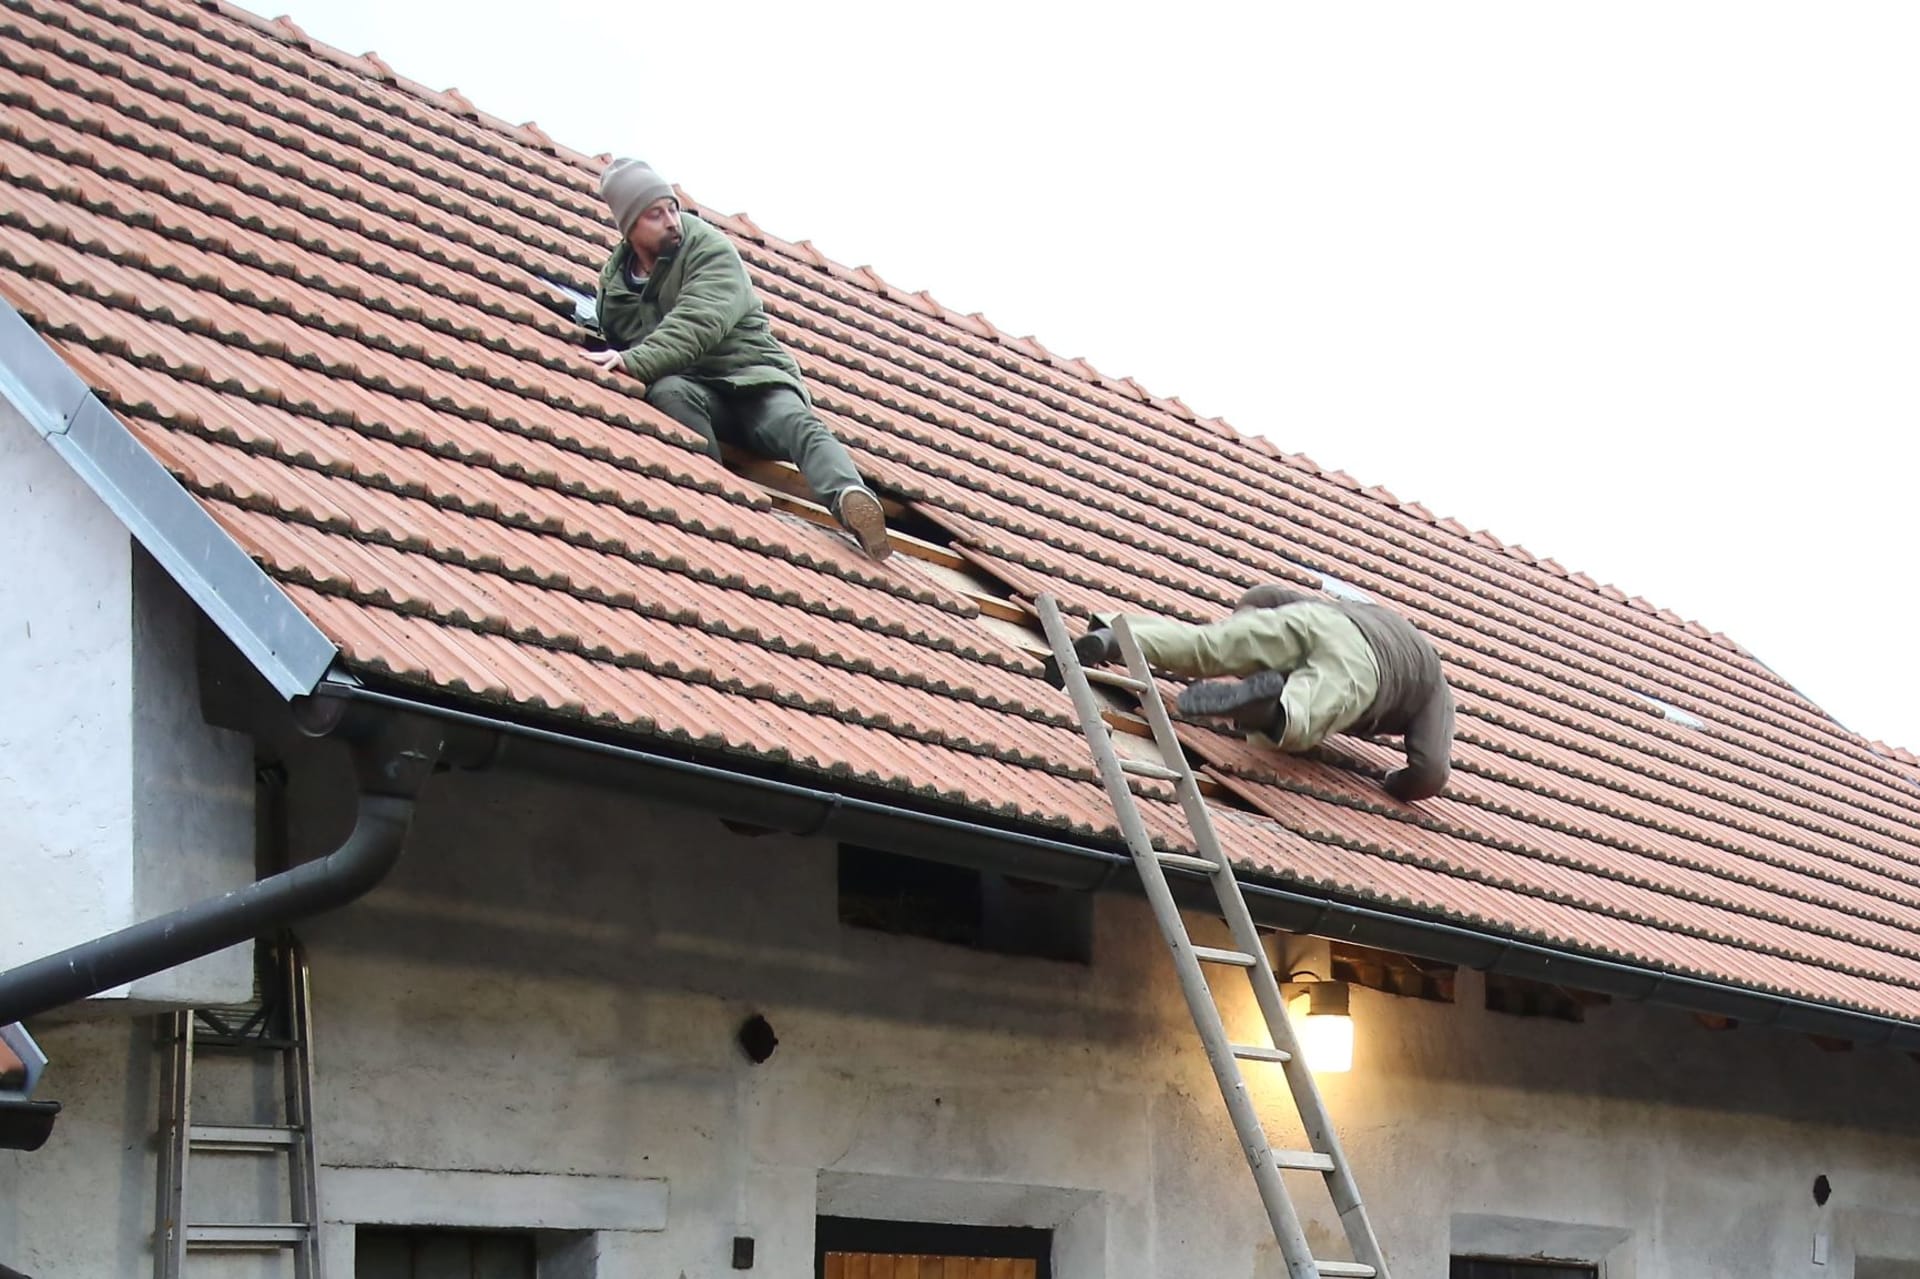 Pád ze střechy